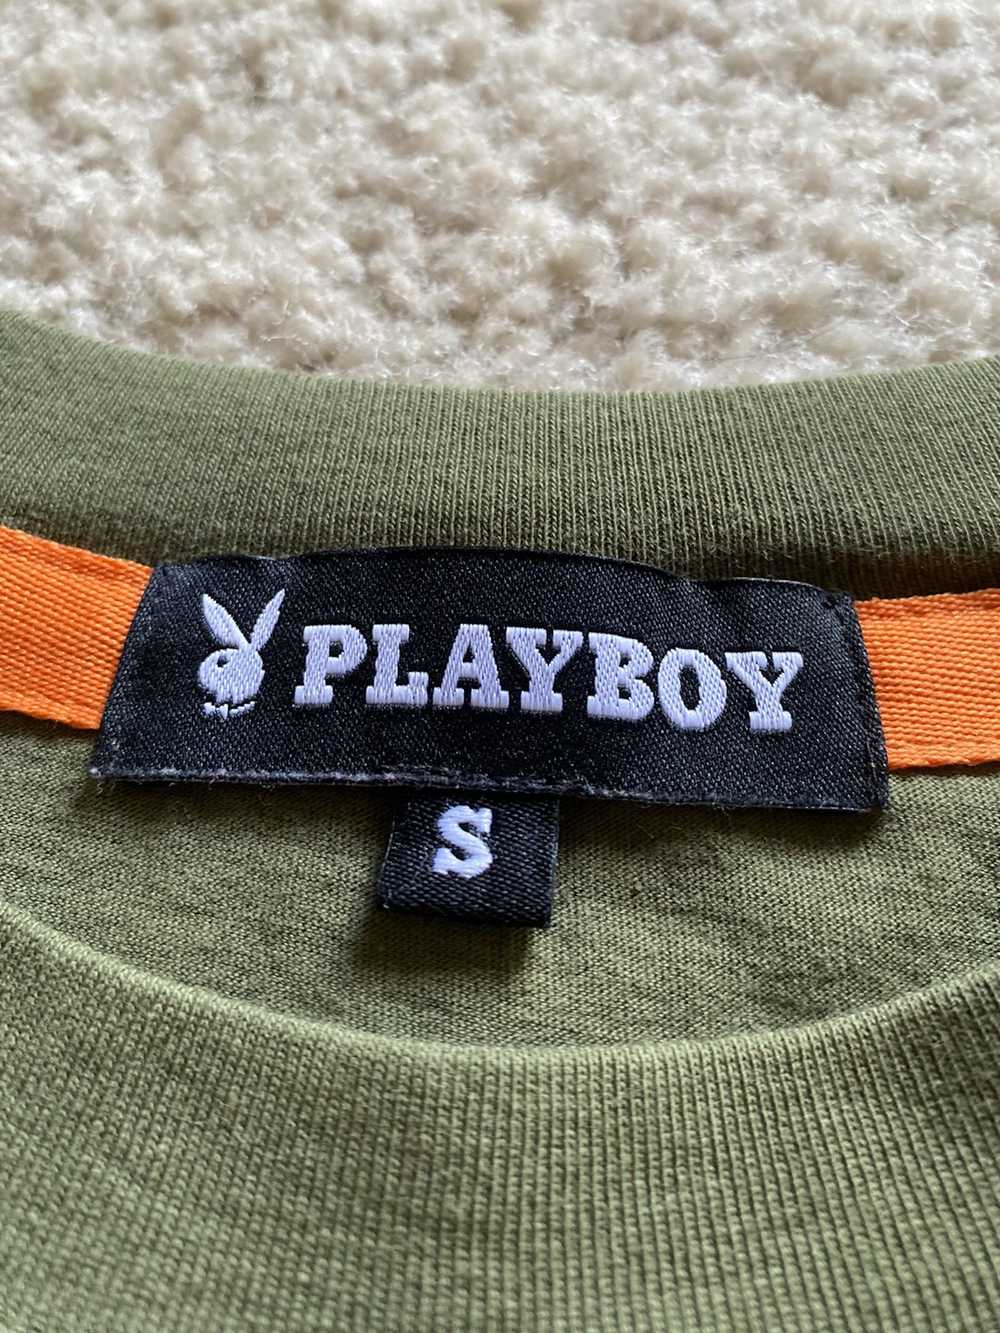 Playboy Playboy long sleeve tee - image 7